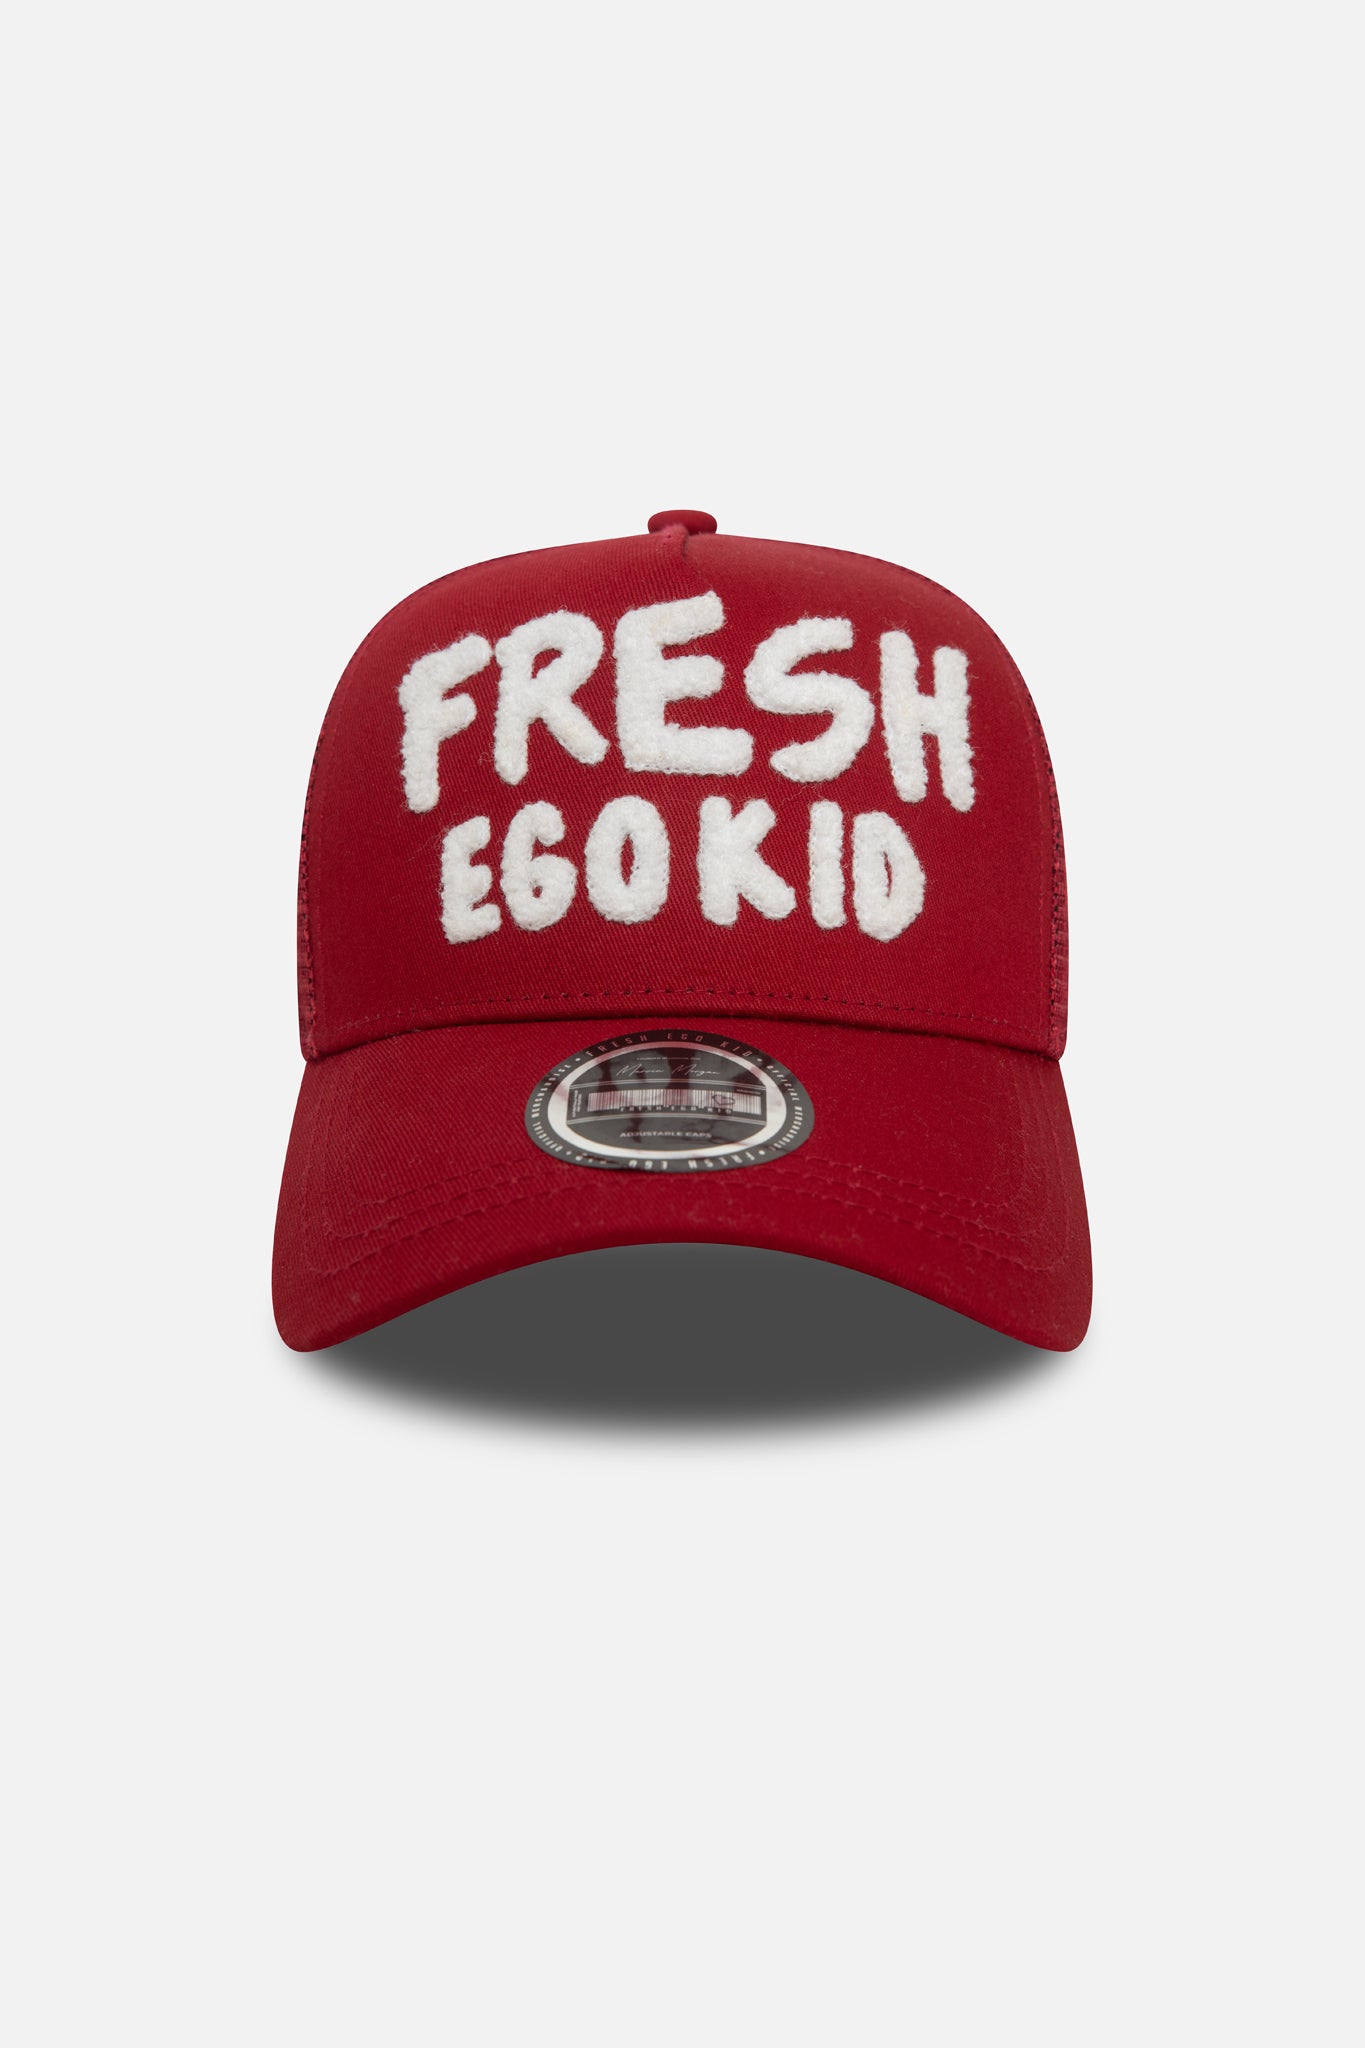 Fresh Ego Kid Bel-Air logo trucker